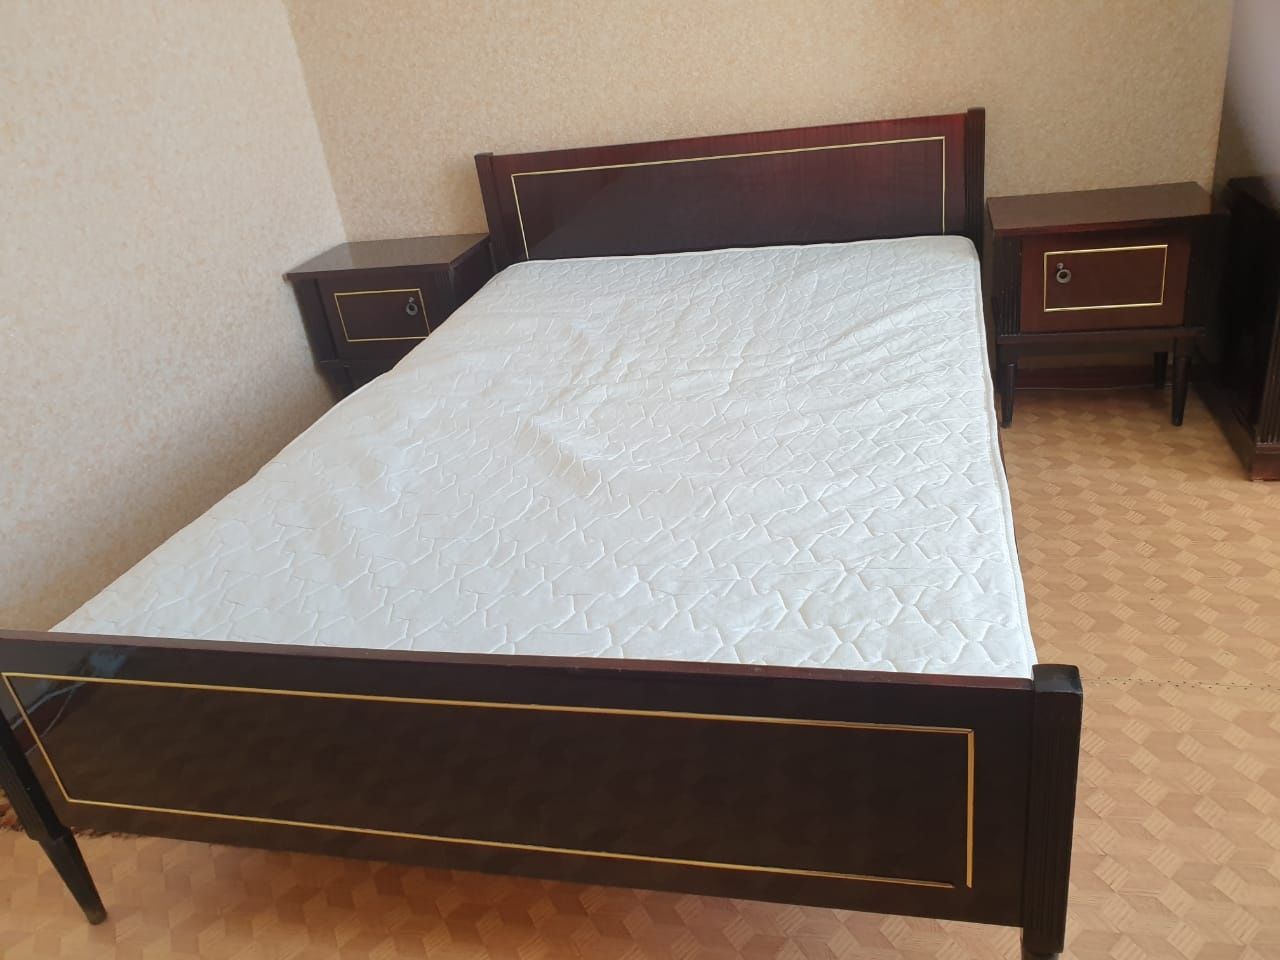 Продается 2 спальная кровать с прикроватными тумбочками.